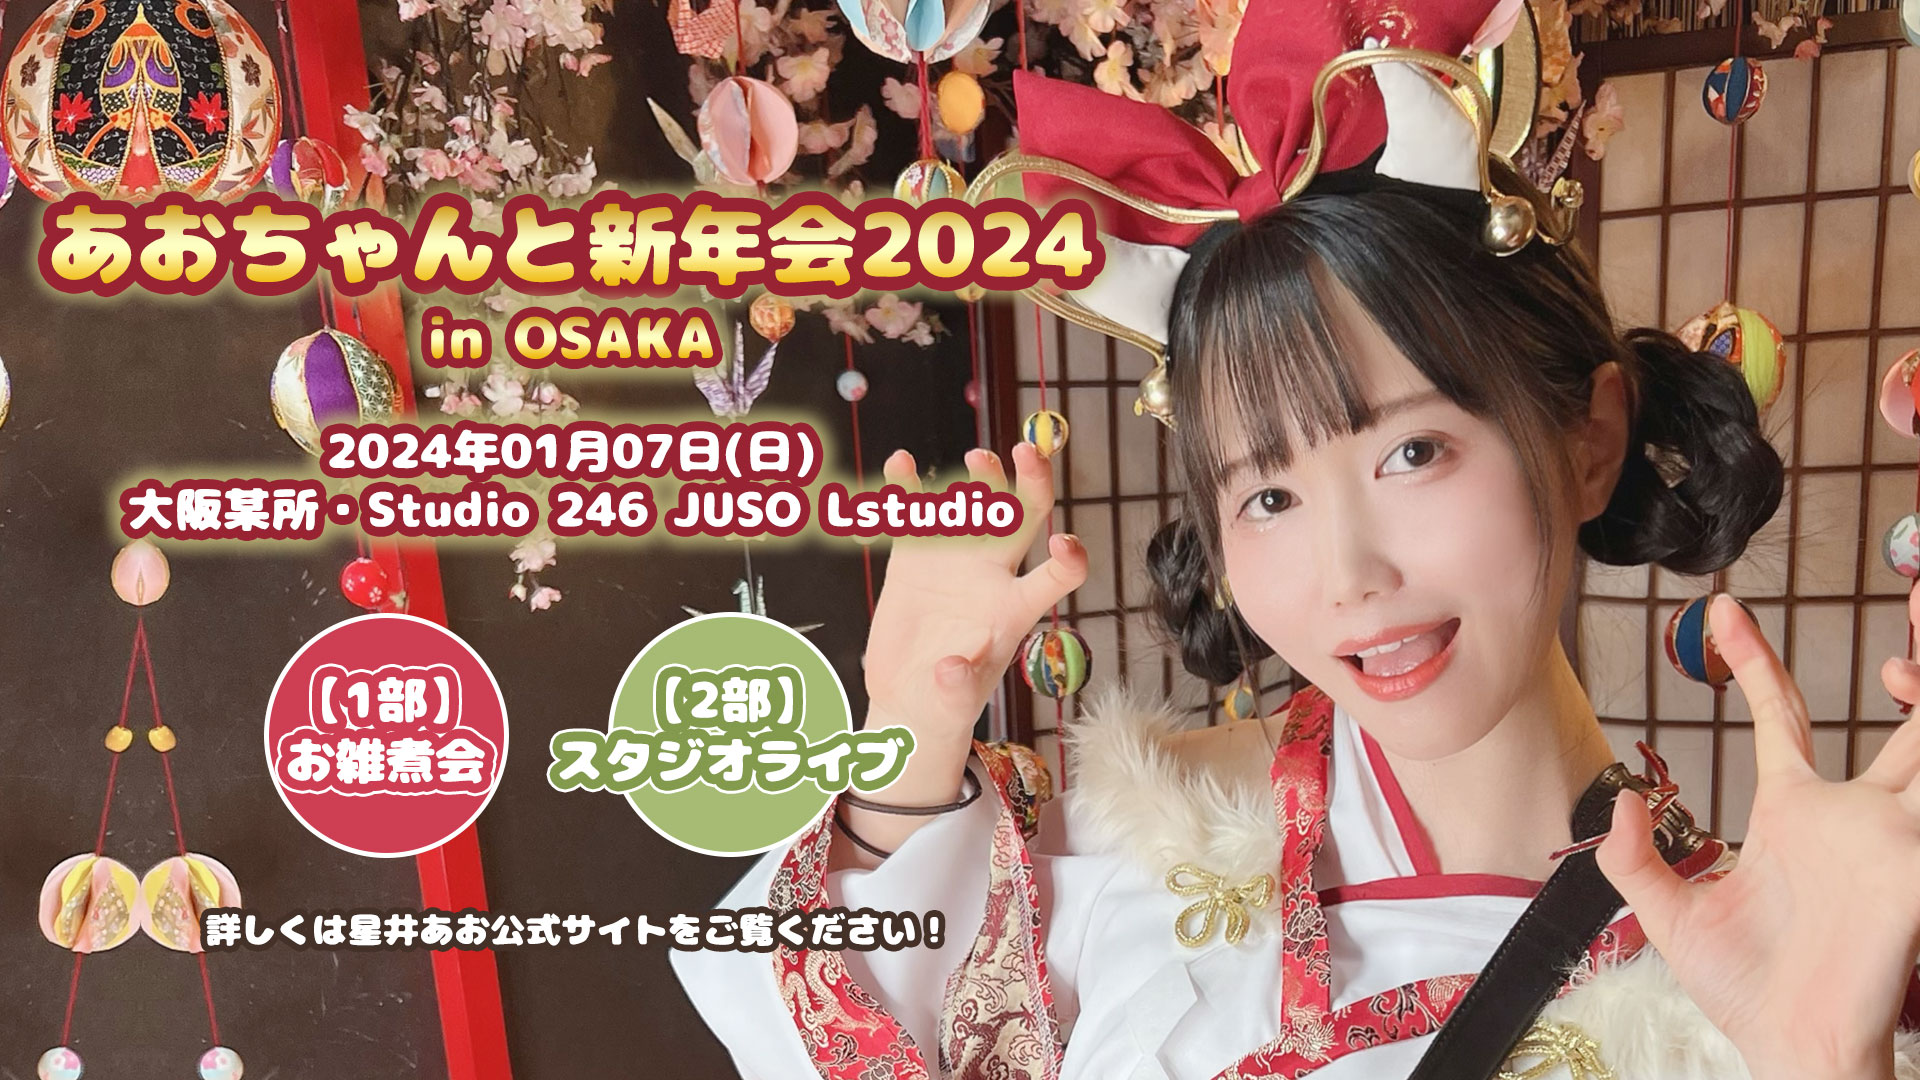 【2部】星井あおpresents『あおちゃんと新年会2024 in OSAKA』